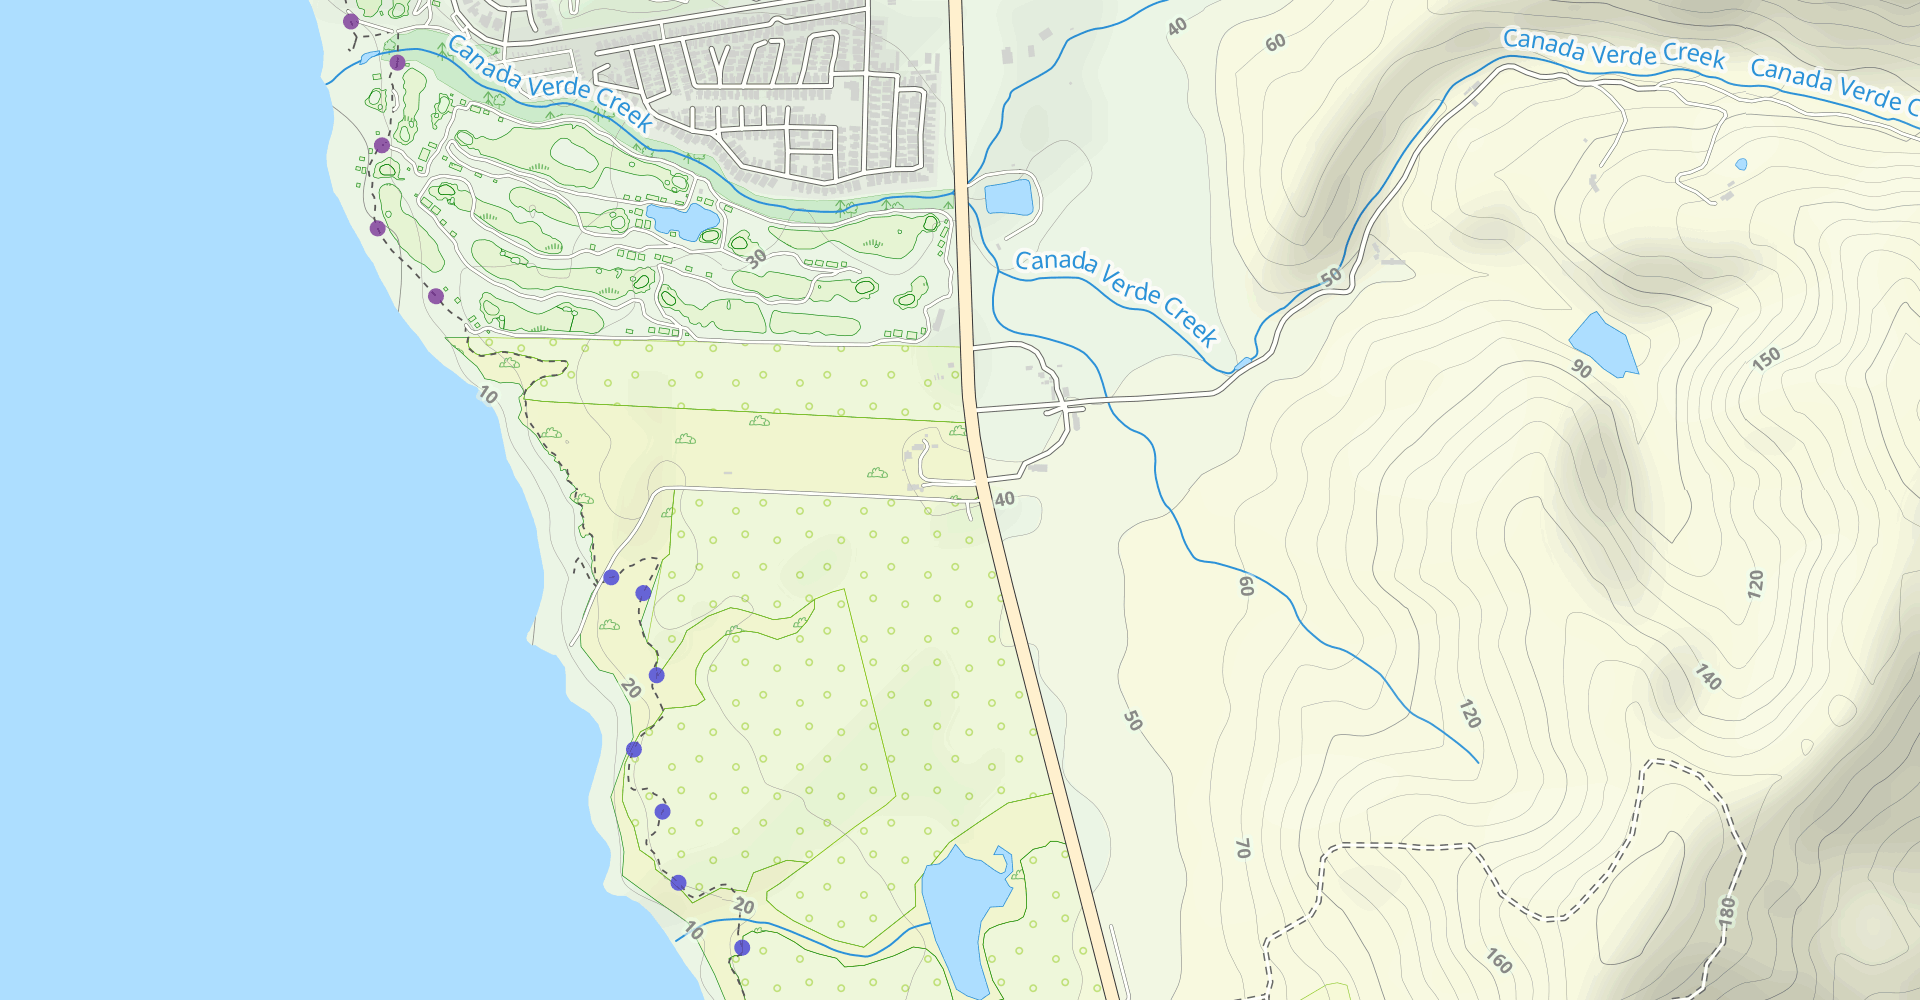 Cowell-Purisima Trail